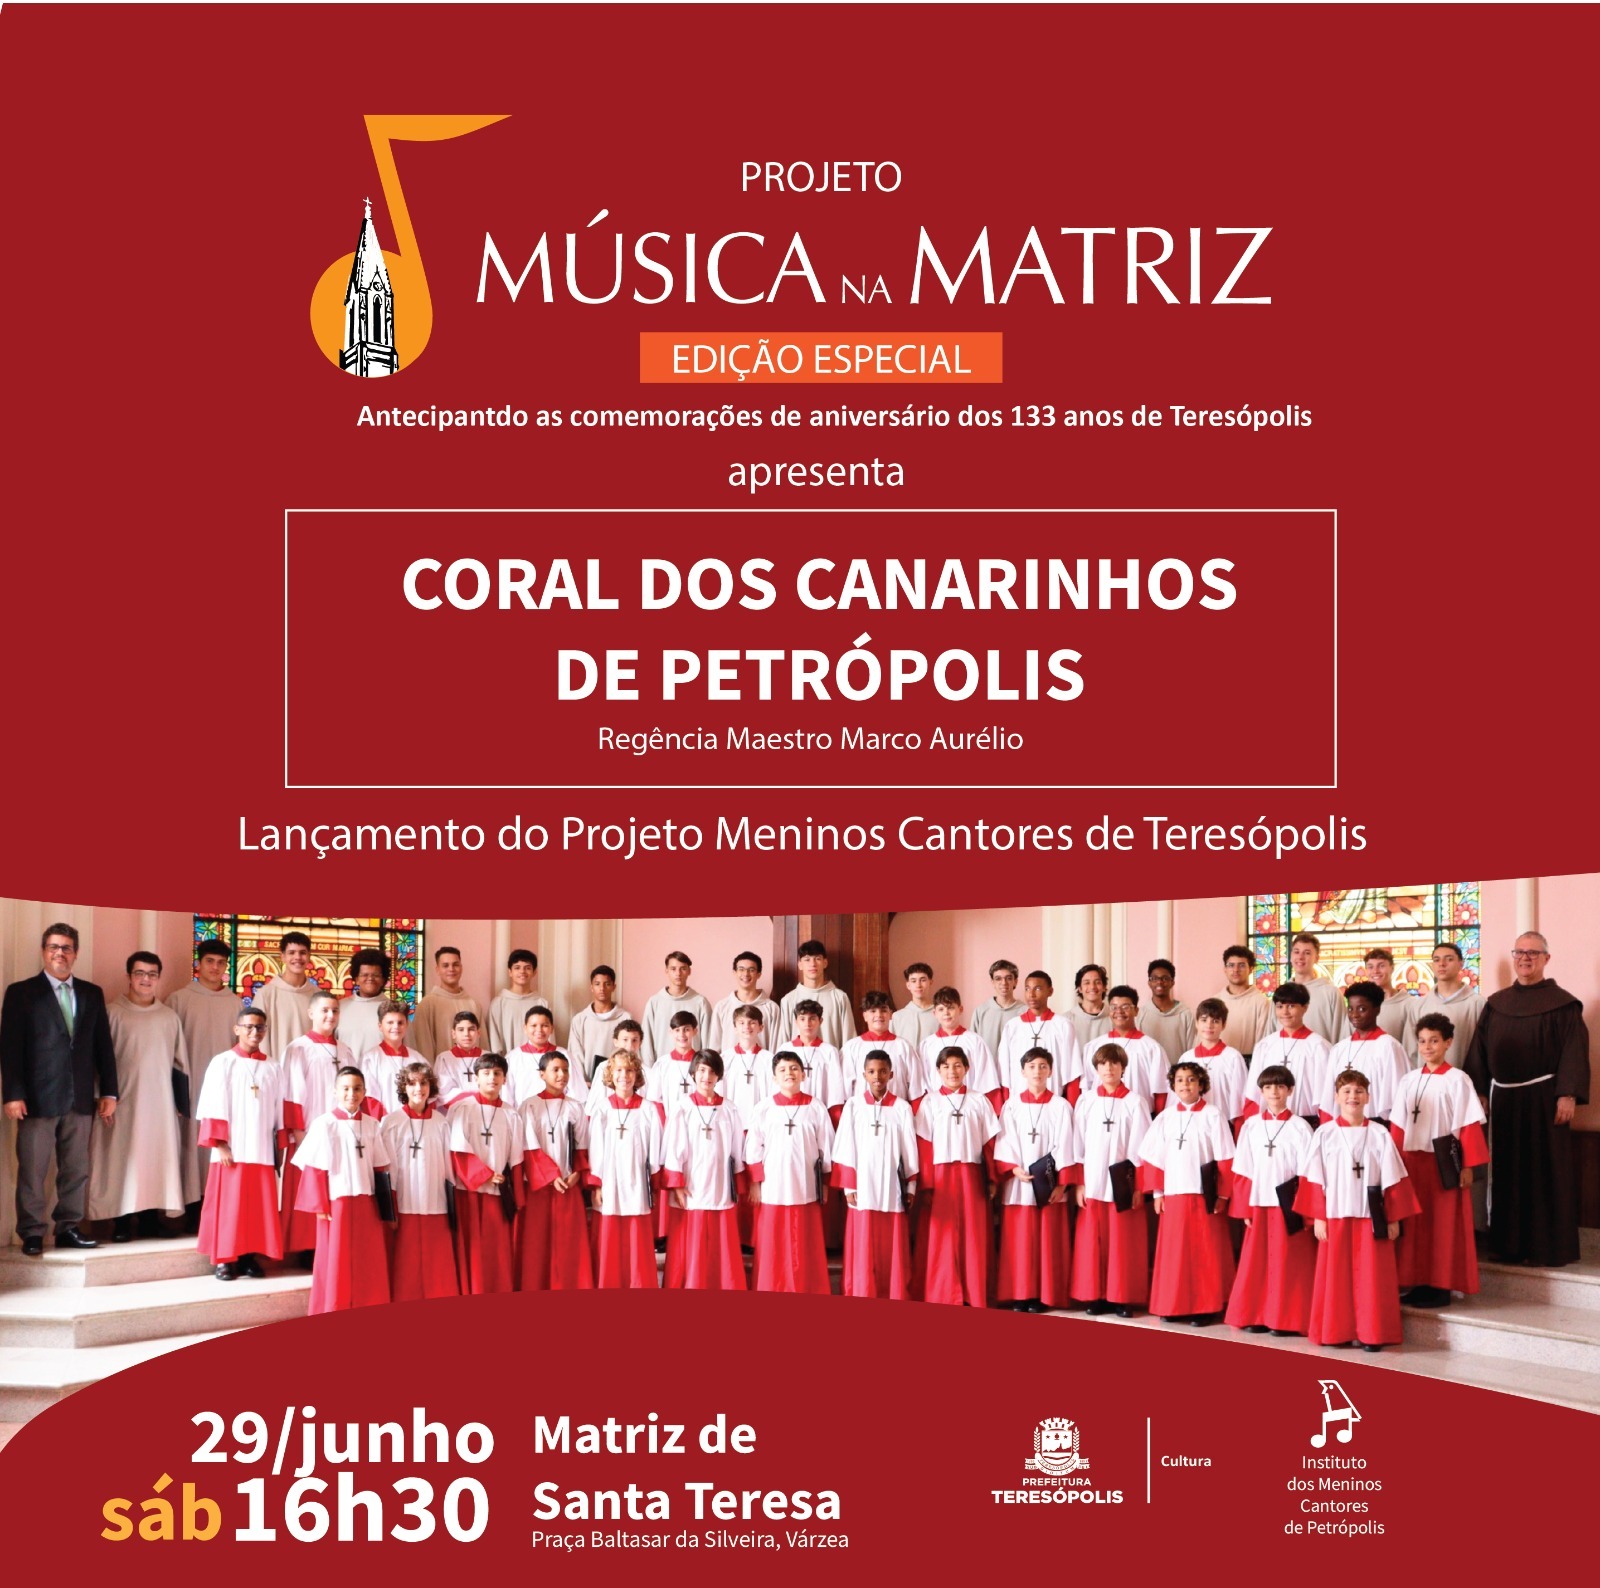 Você está visualizando atualmente Música na Matriz terá edição especial no sábado, 29 de junho, com o Coral dos Canarinhos de Petrópolis